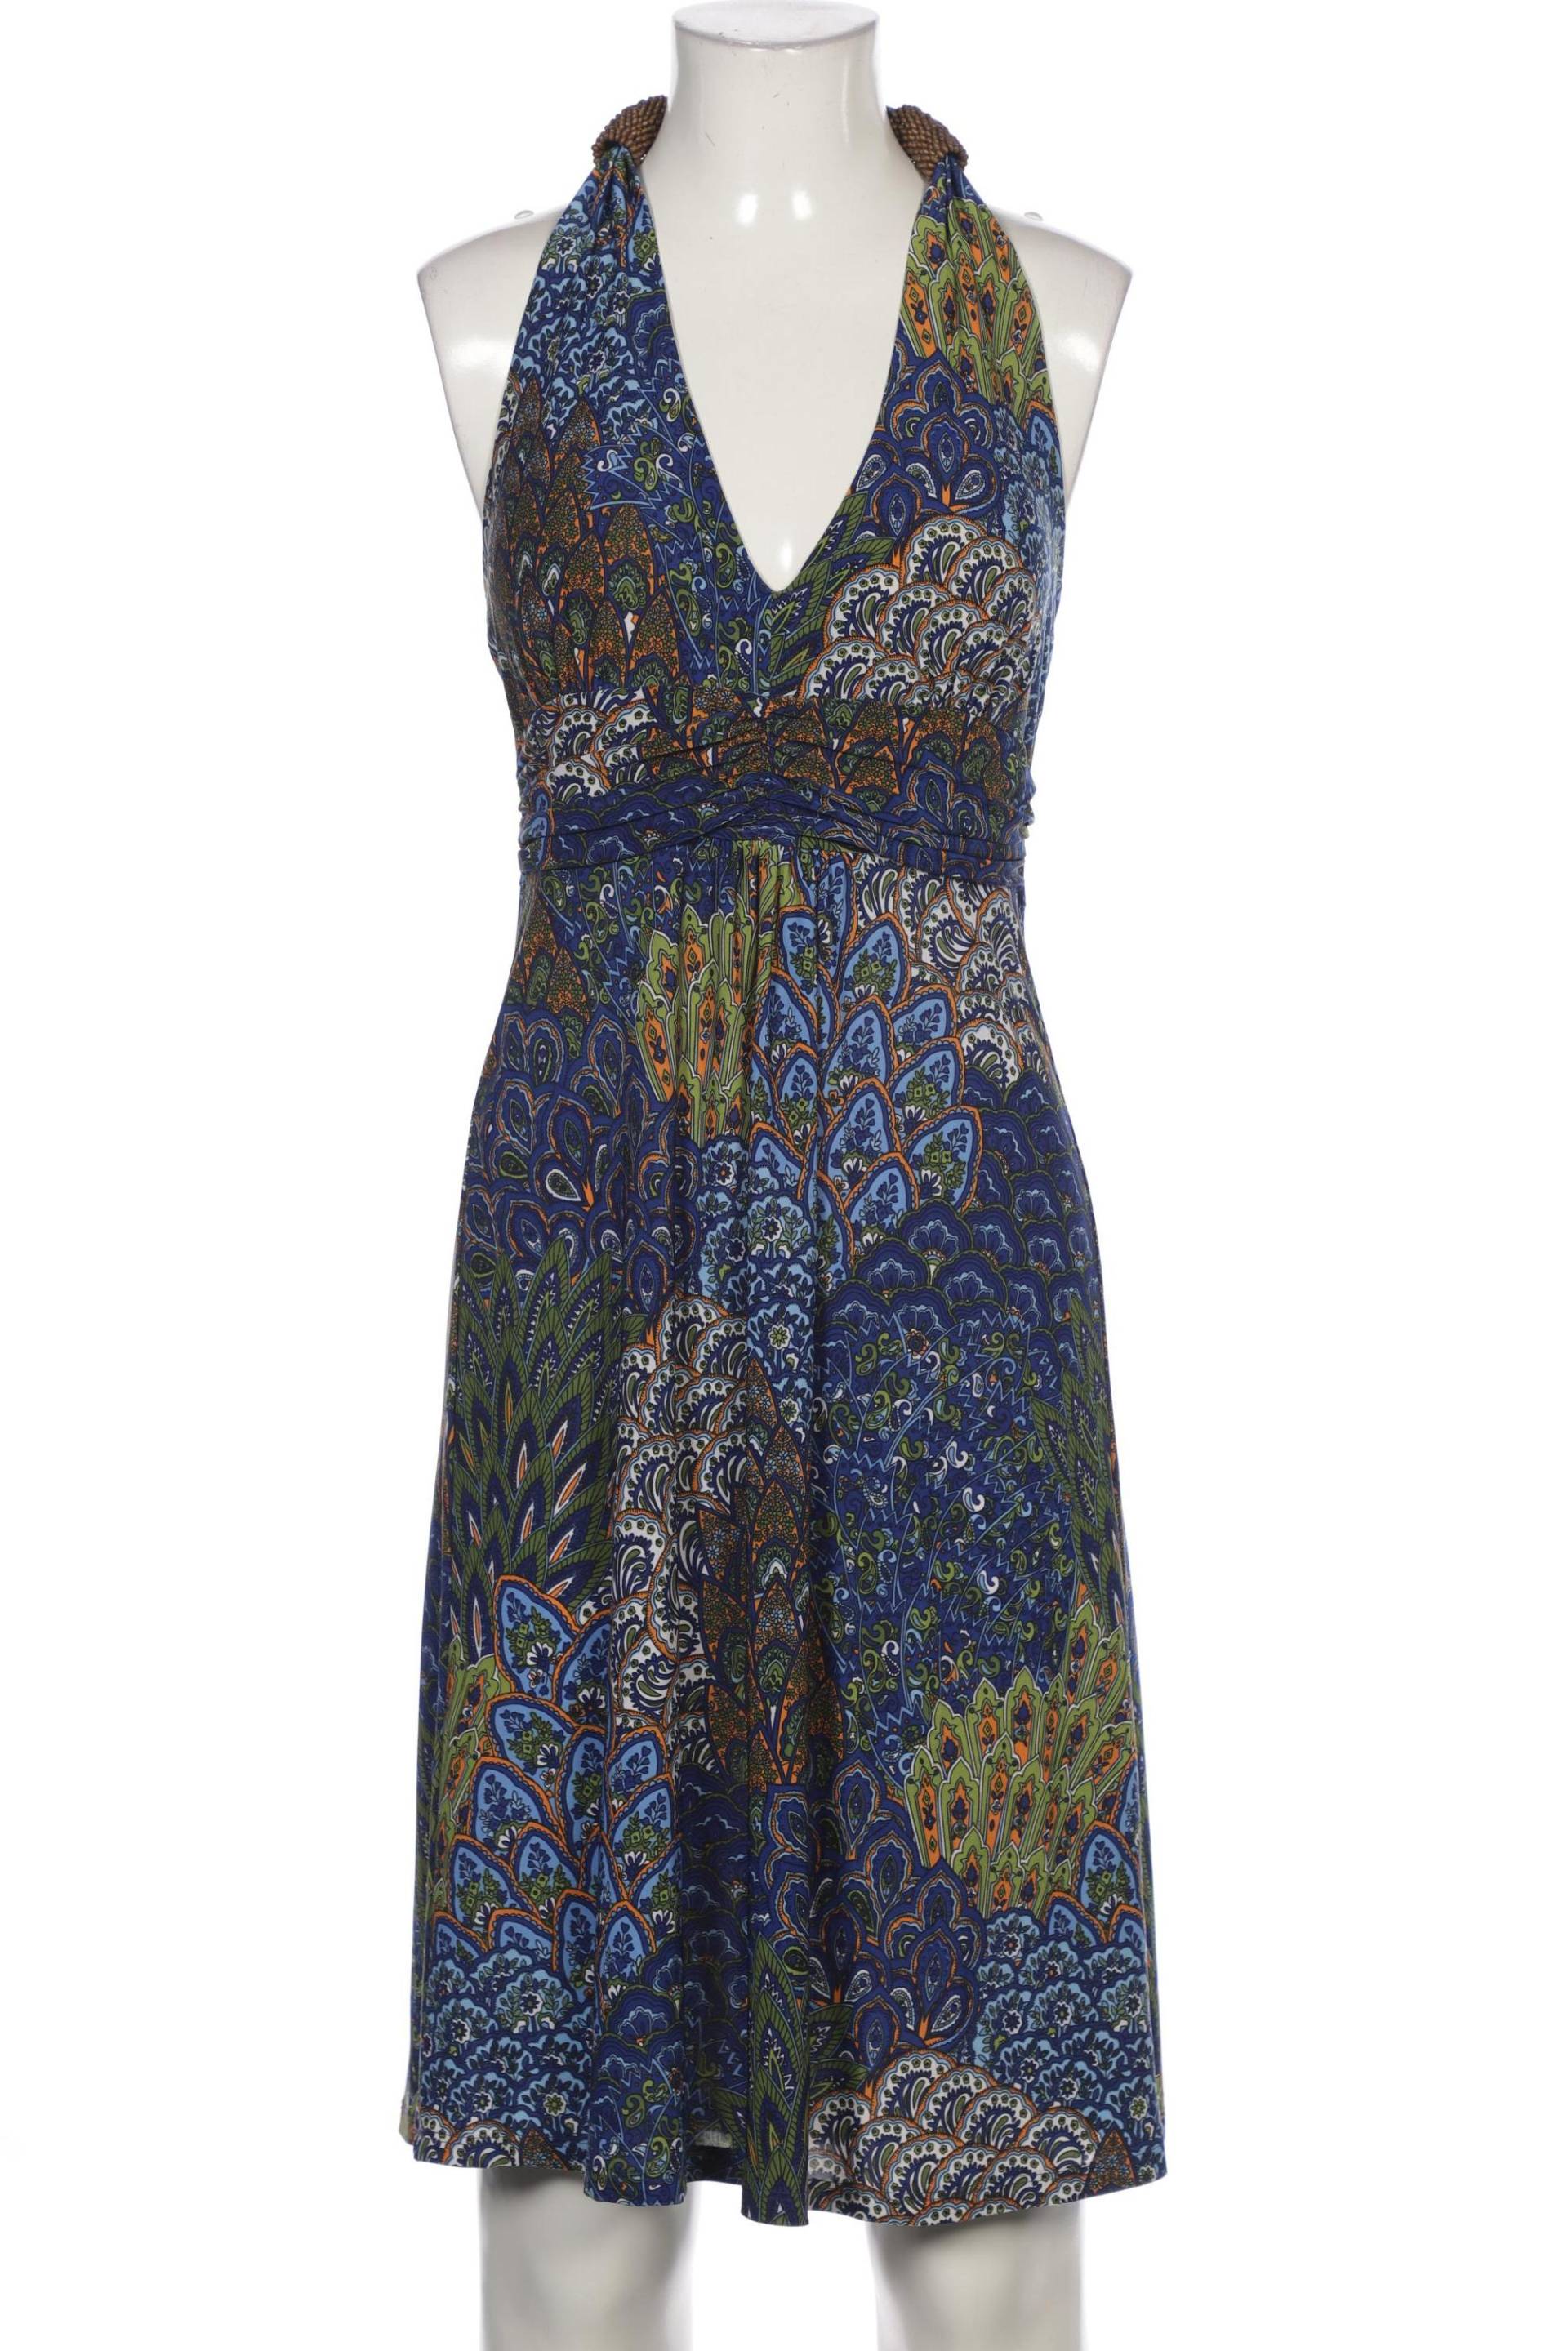 Montego Damen Kleid, mehrfarbig, Gr. 32 von montego